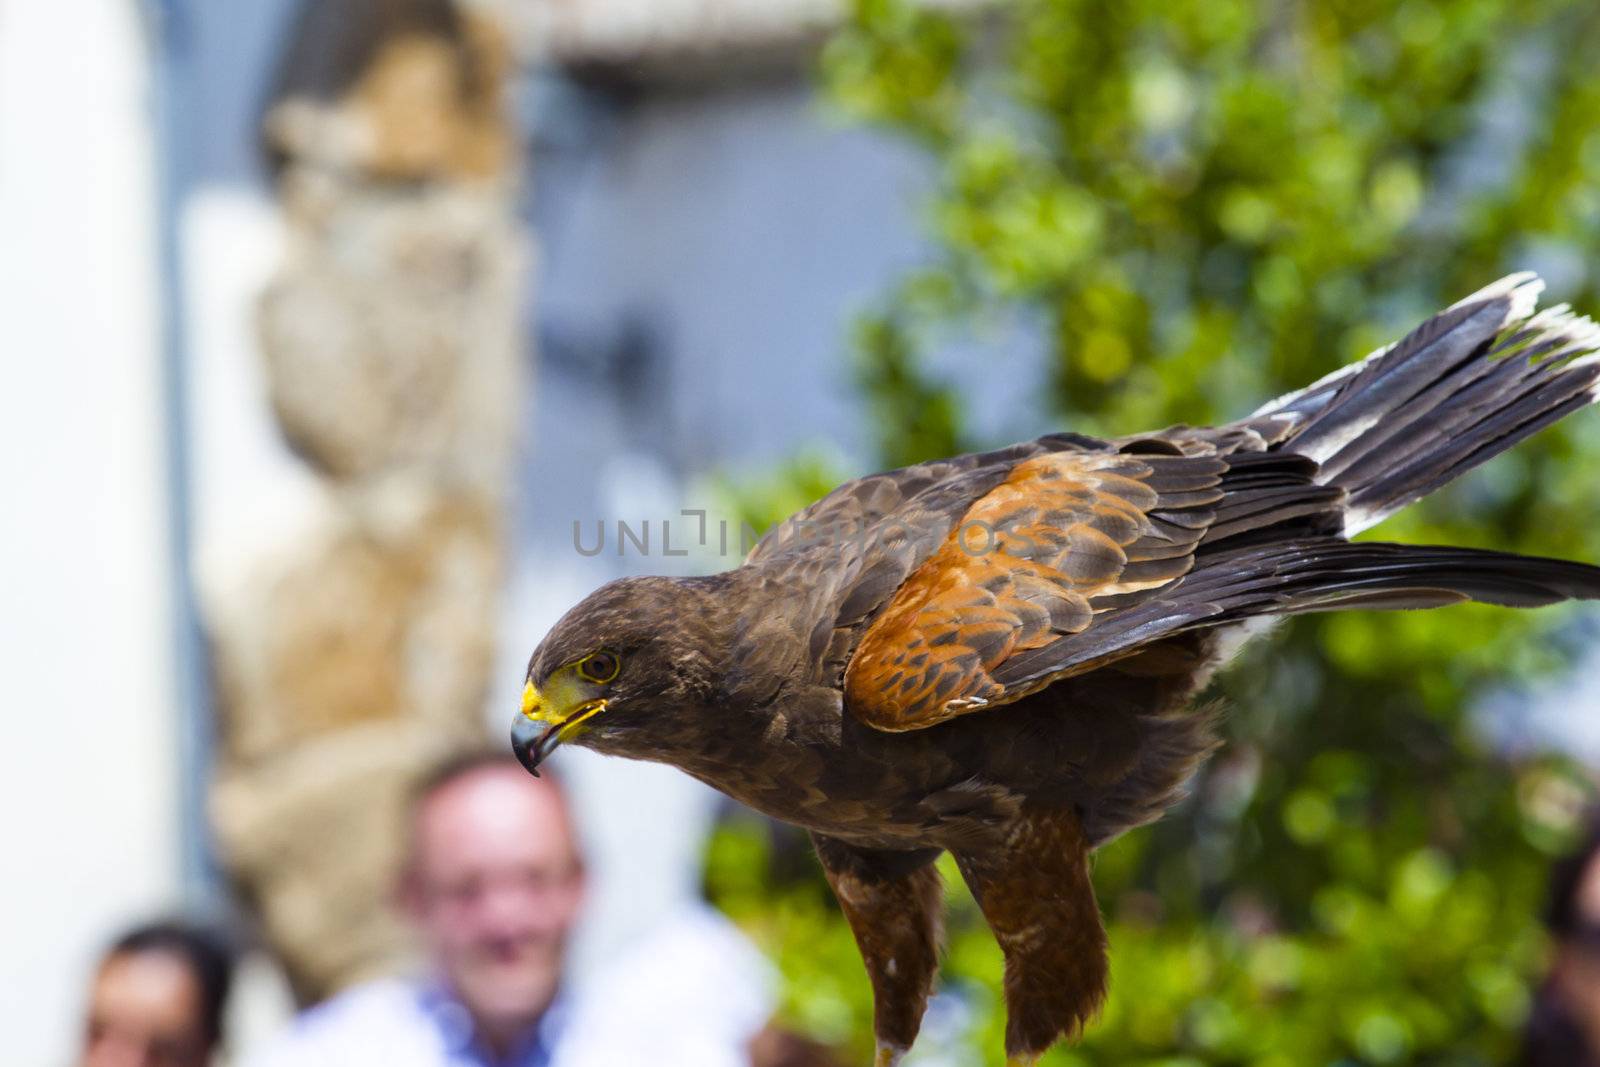 display of birds of prey, golden eagle by FernandoCortes